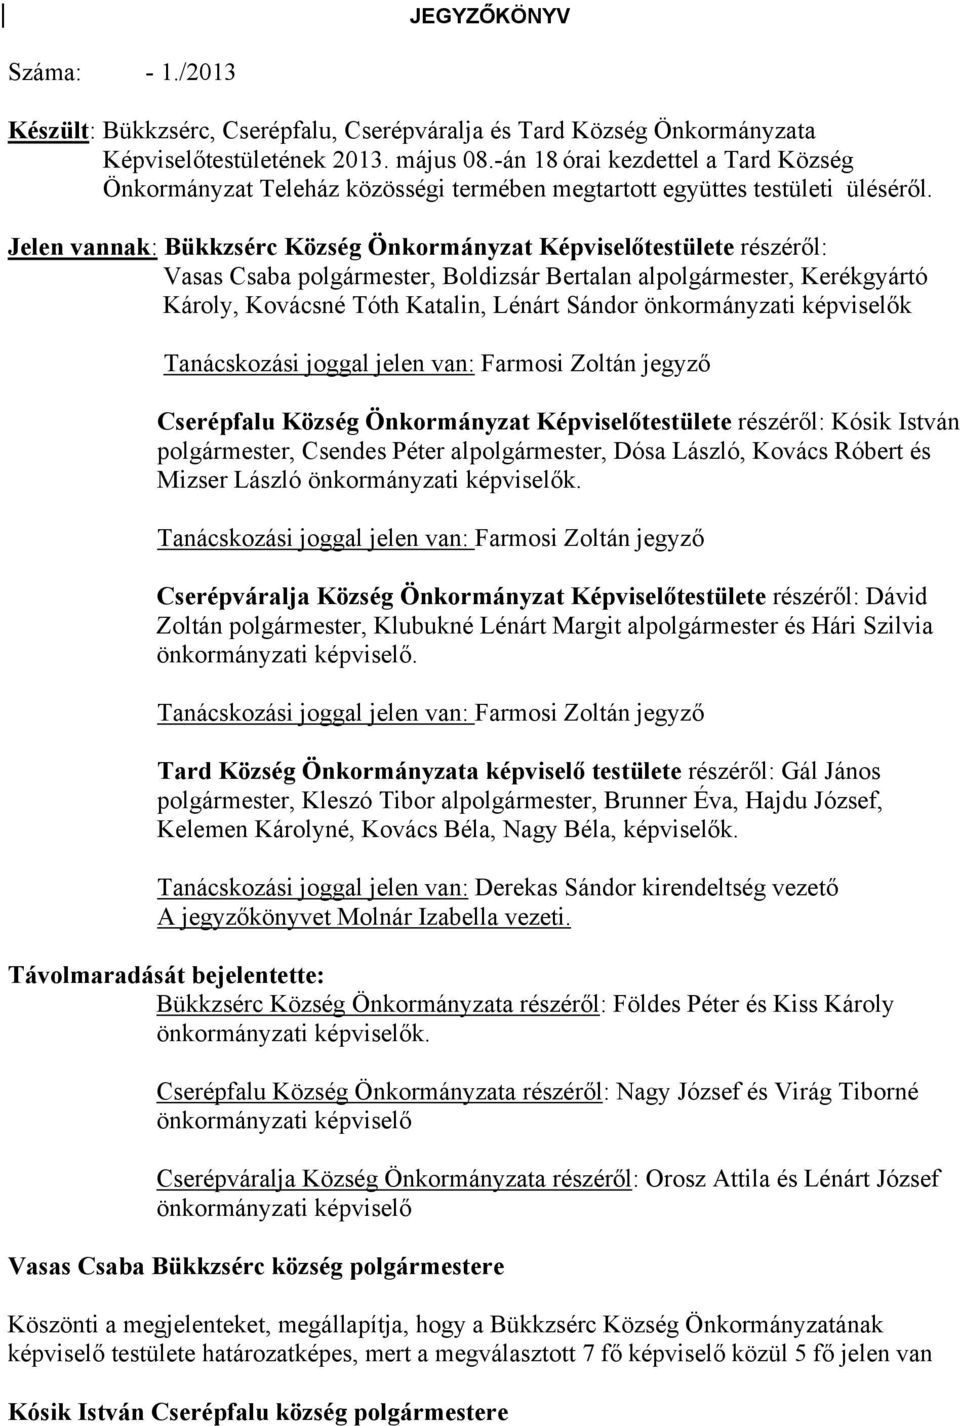 JEGYZŐKÖNYV. Tanácskozási joggal jelen van: Farmosi Zoltán jegyző - PDF  Ingyenes letöltés